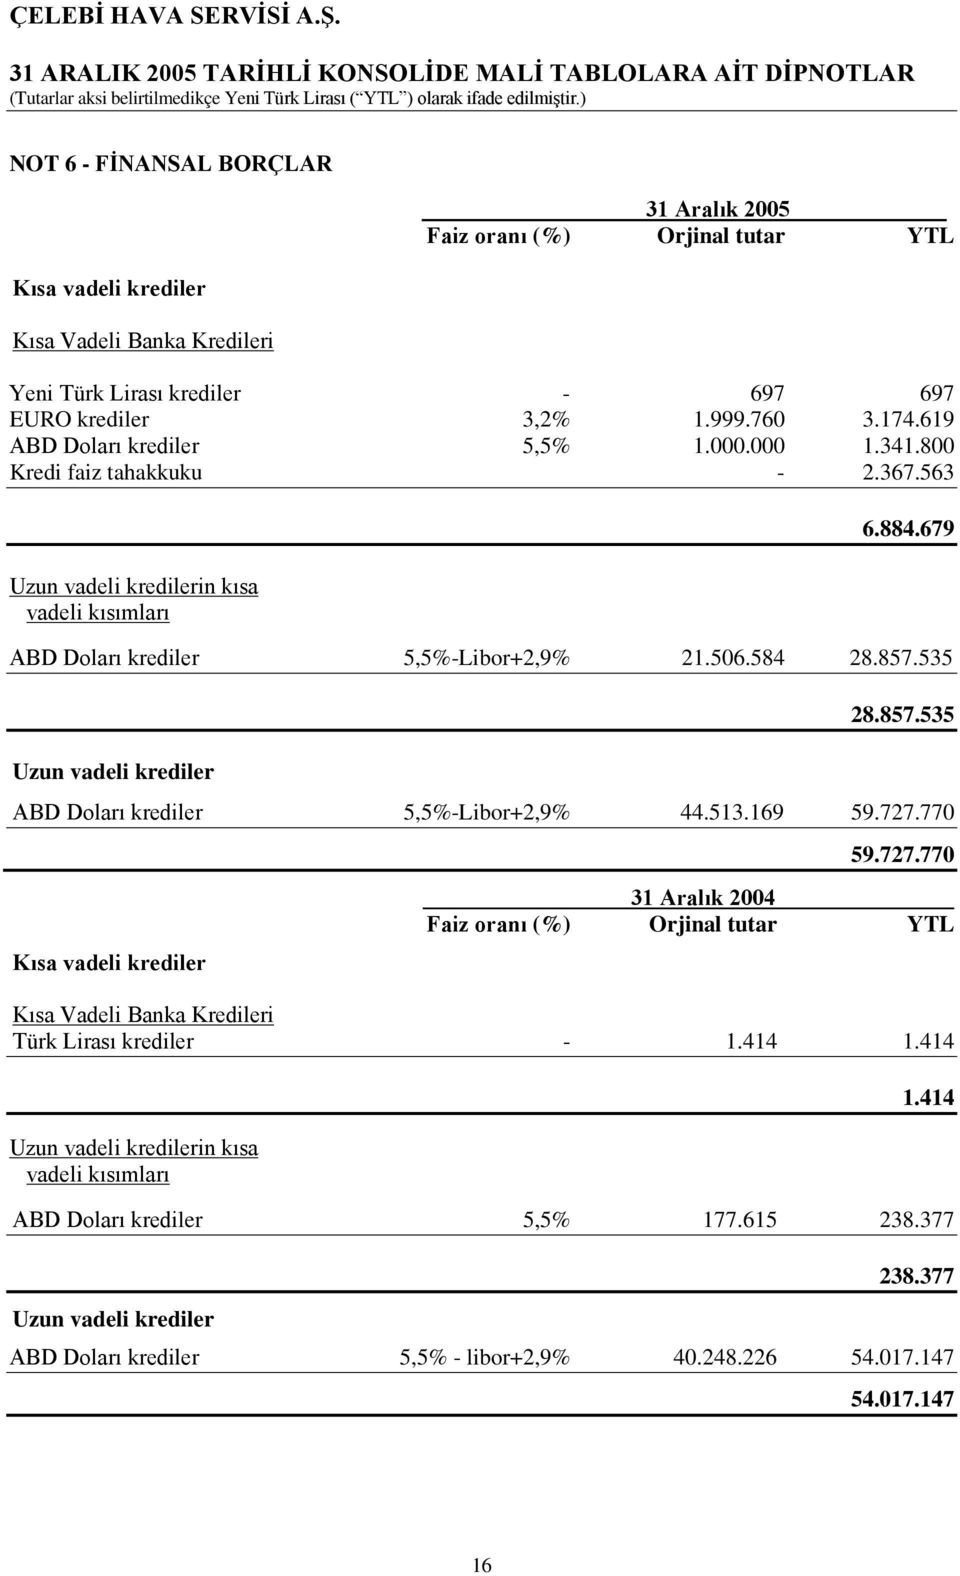 535 Uzun vadeli krediler 28.857.535 ABD Doları krediler 5,5%-Libor+2,9% 44.513.169 59.727.770 Kısa vadeli krediler 59.727.770 31 Aralık 2004 Faiz oranı (%) Orjinal tutar YTL Kısa Vadeli Banka Kredileri Türk Lirası krediler - 1.